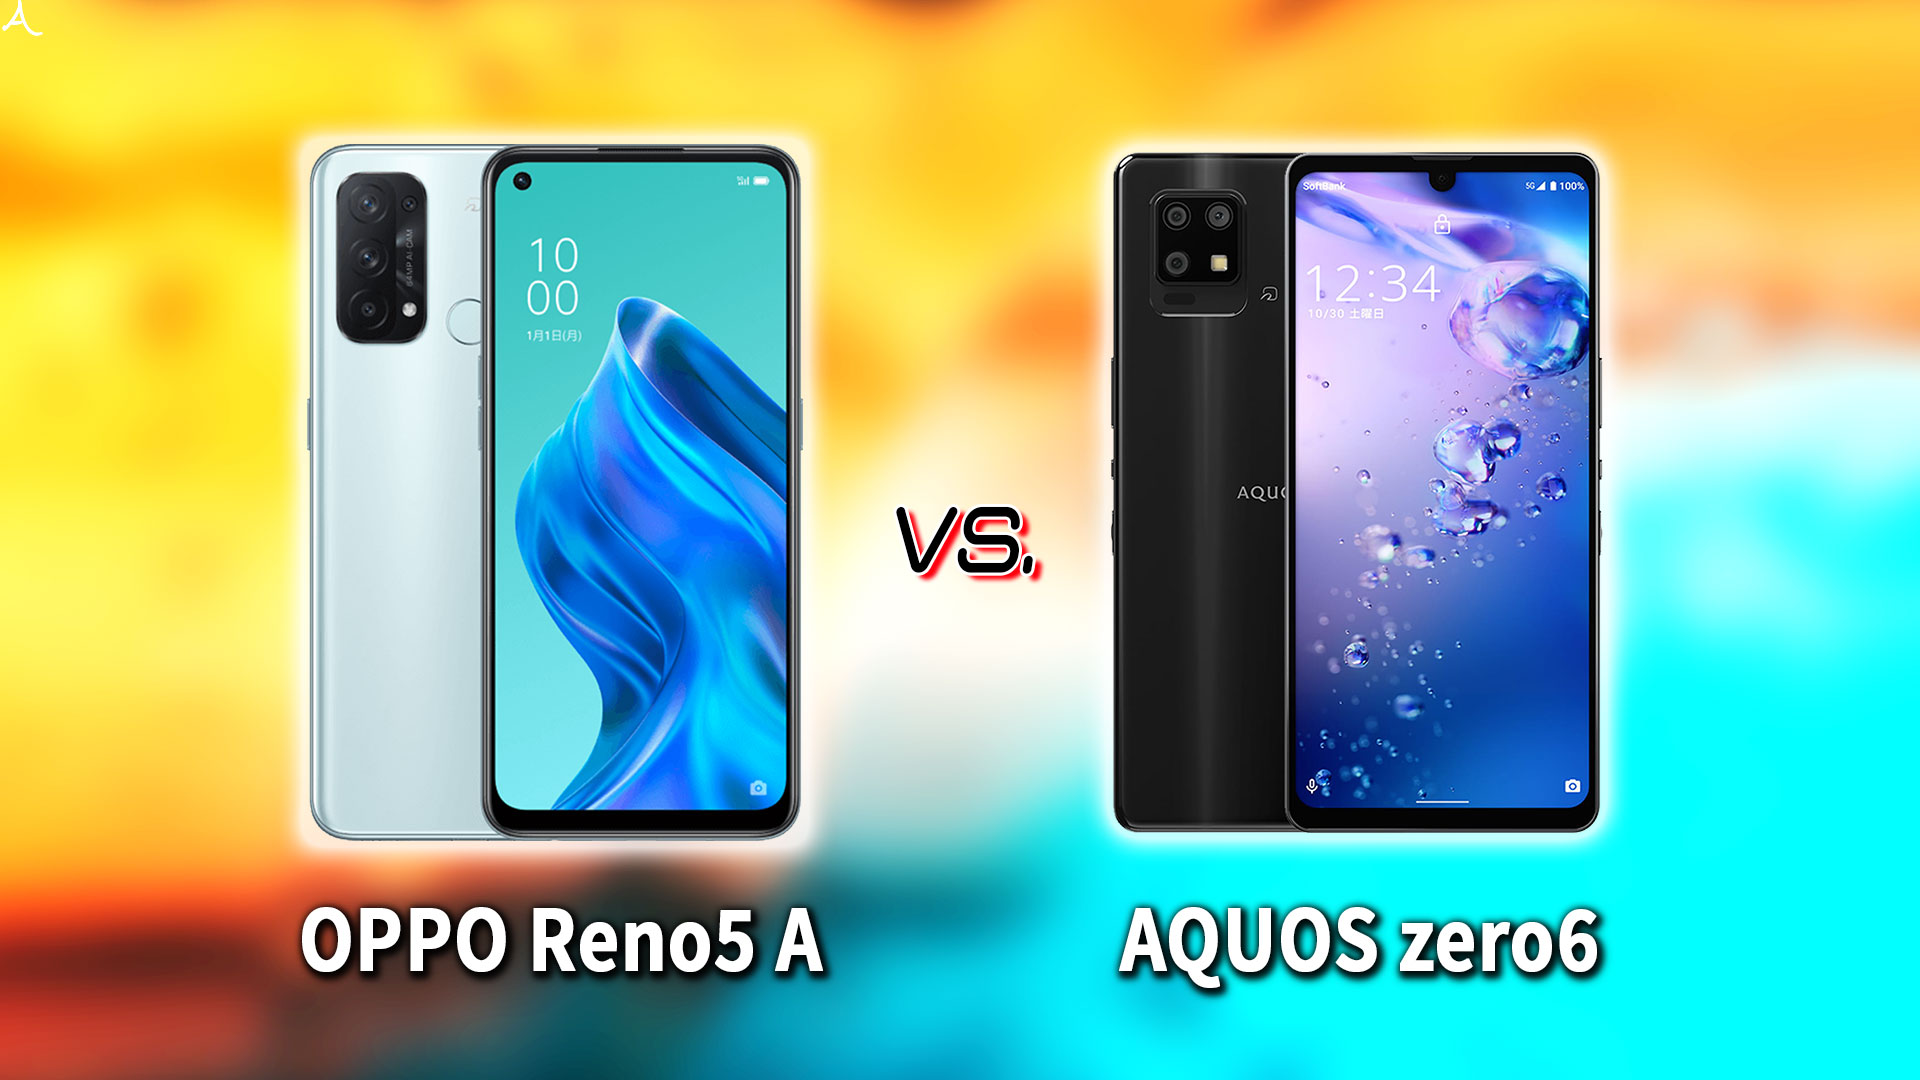 ｢OPPO Reno5 A｣と｢AQUOS zero6｣の違いを比較：どっちを買う？